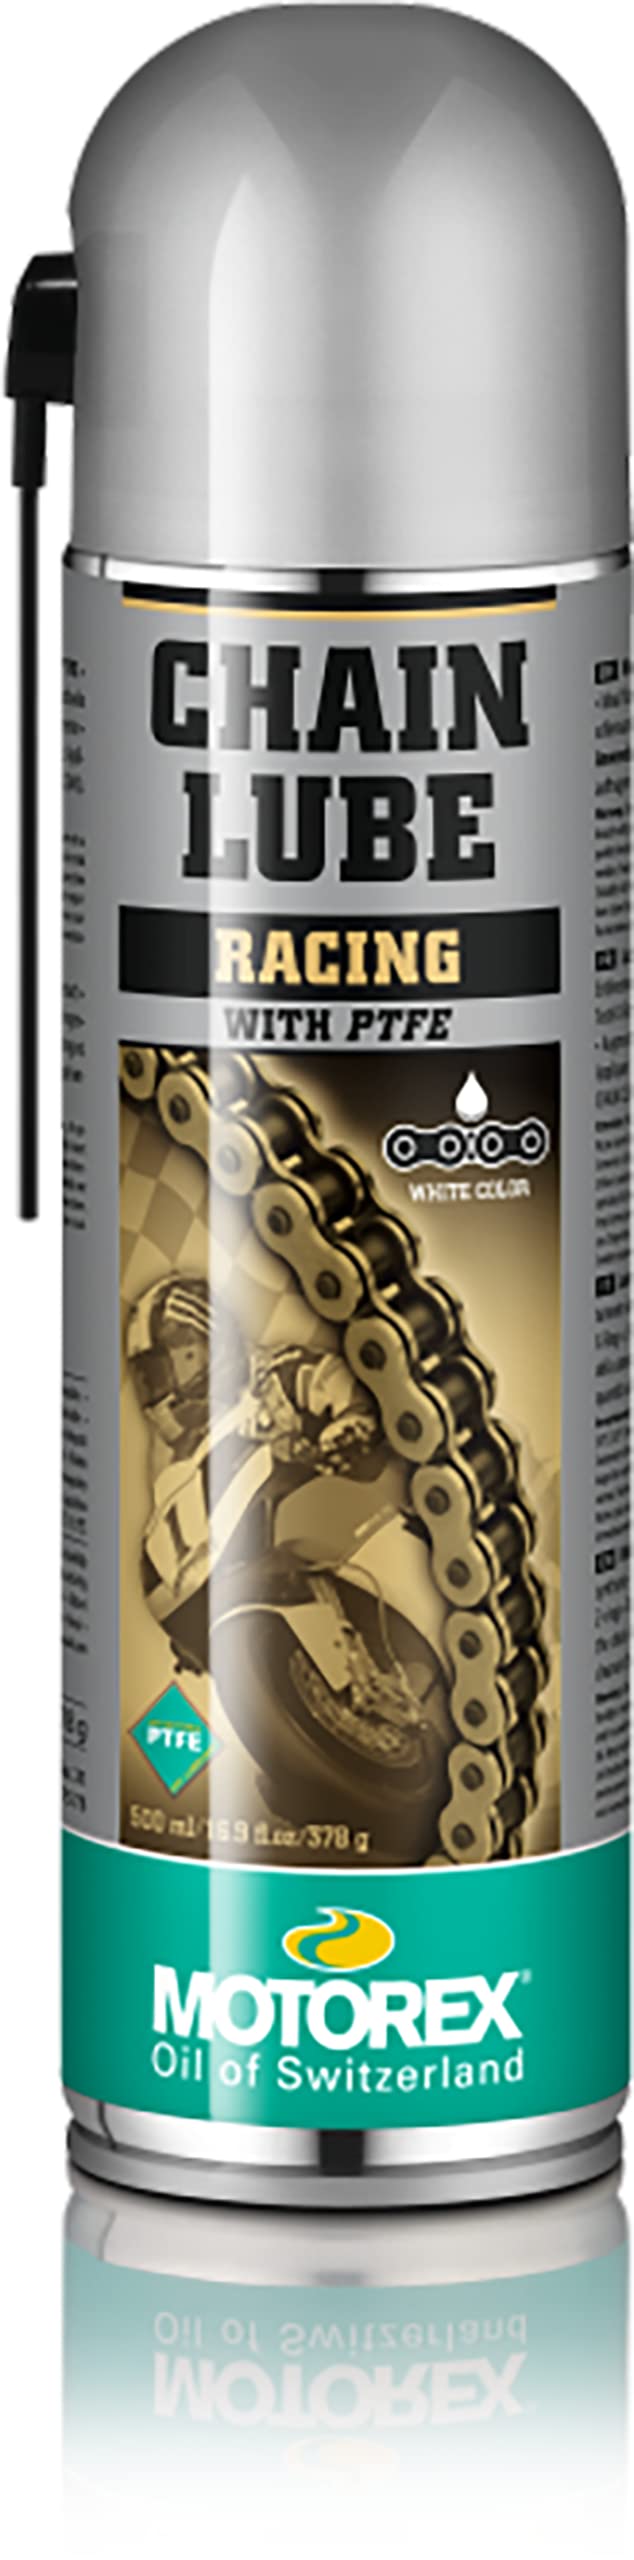 Motorex Racing Kette Lube Spray – 500 ml. Voc konform 621–051 von Motorex